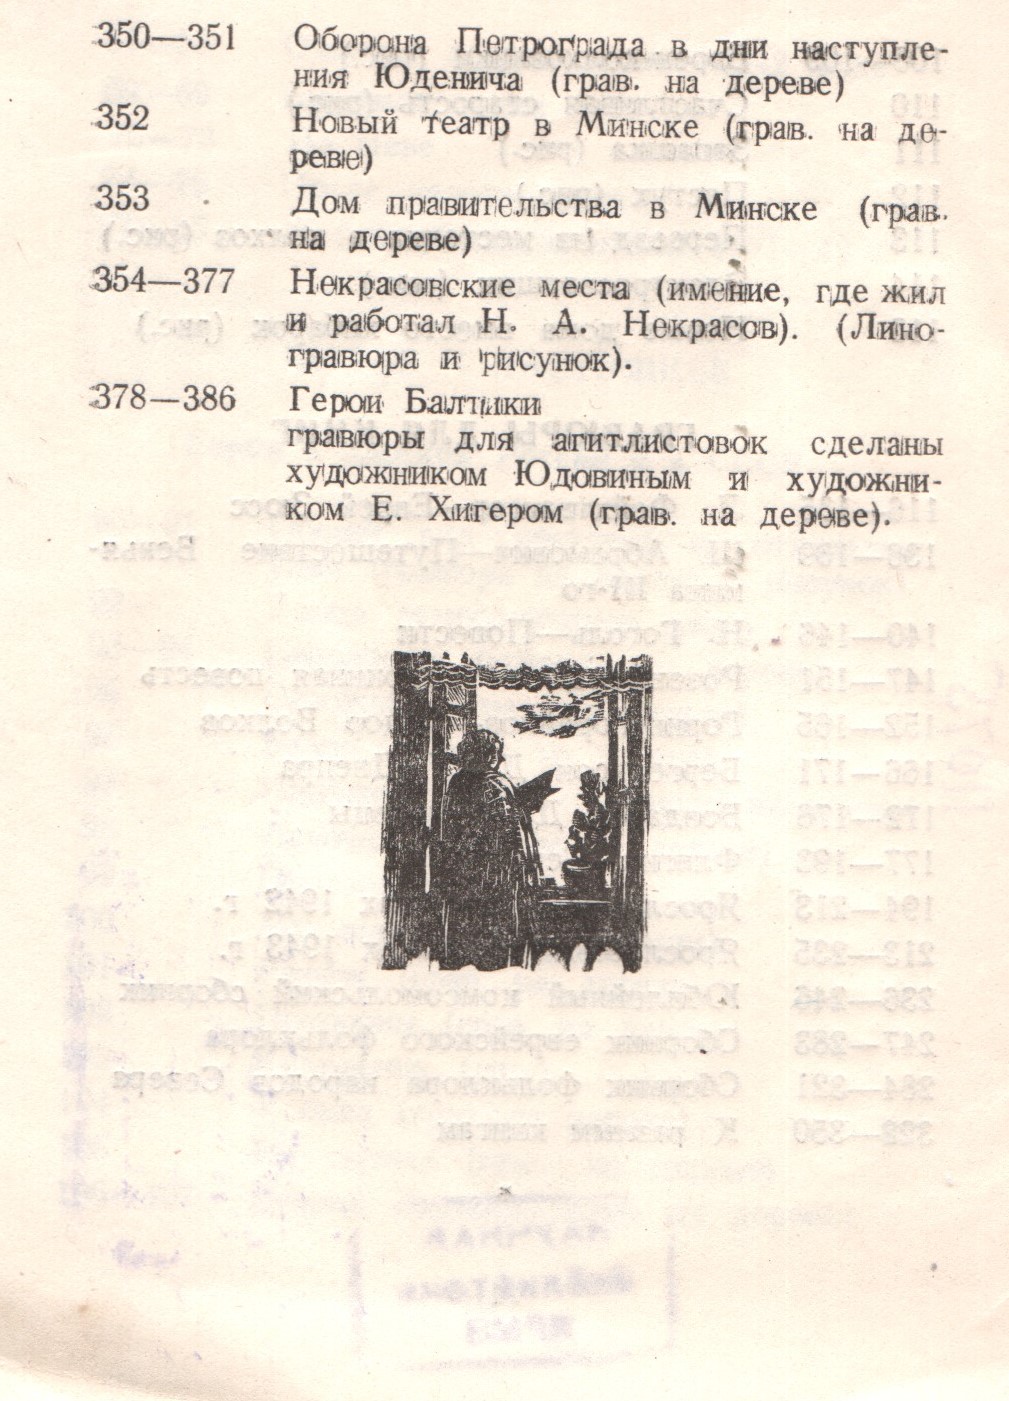 Печатное издание. Выставка гравюр С.Б. Юдовина. Ярославль, 1944 г.8.jpg